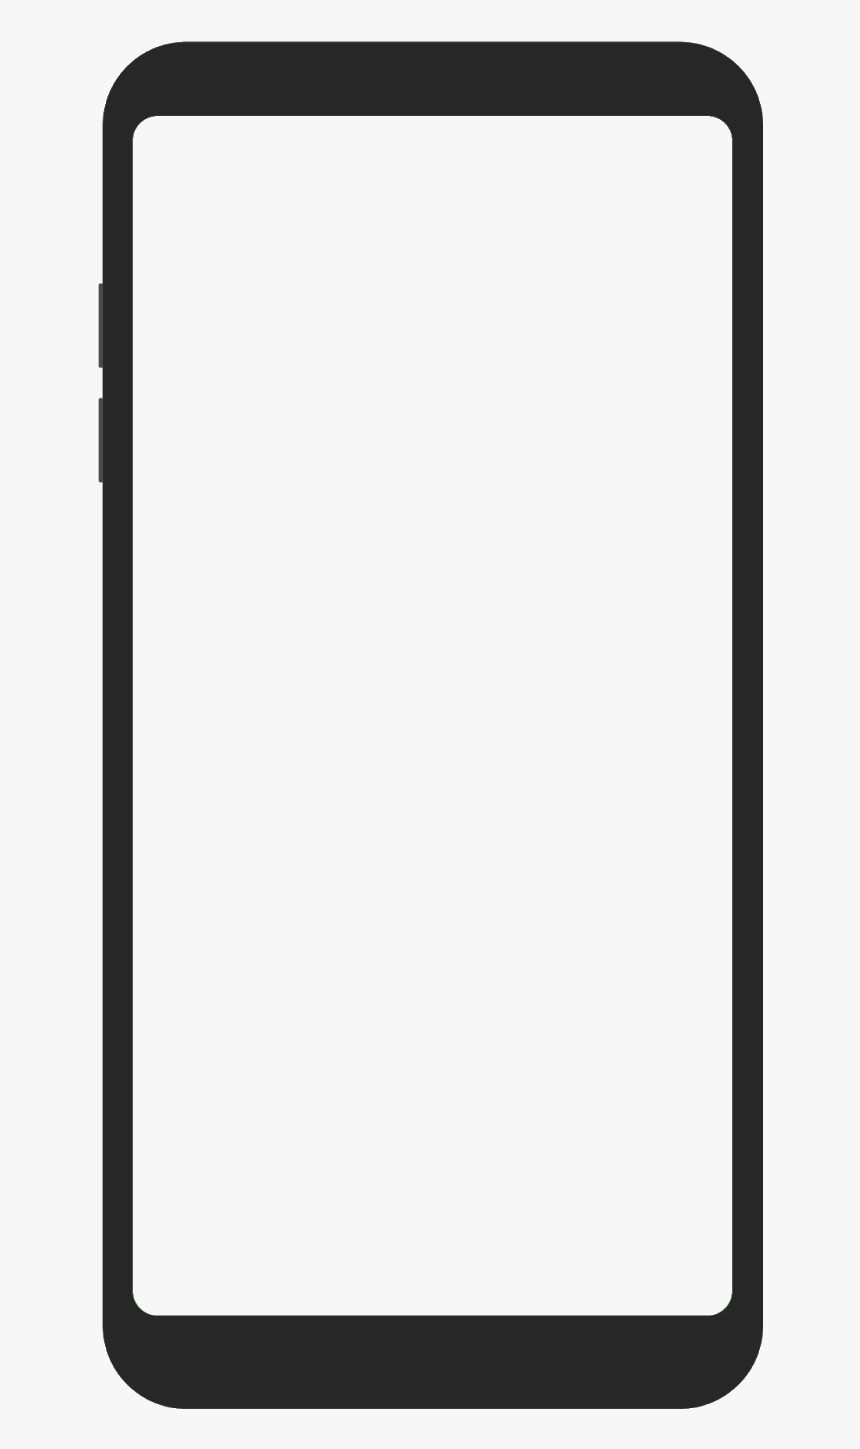 Mobile Frame Png Full Hd Mobiles Kartik Creation - Google Pixel 3 Vector, Transparent Png, Free Download